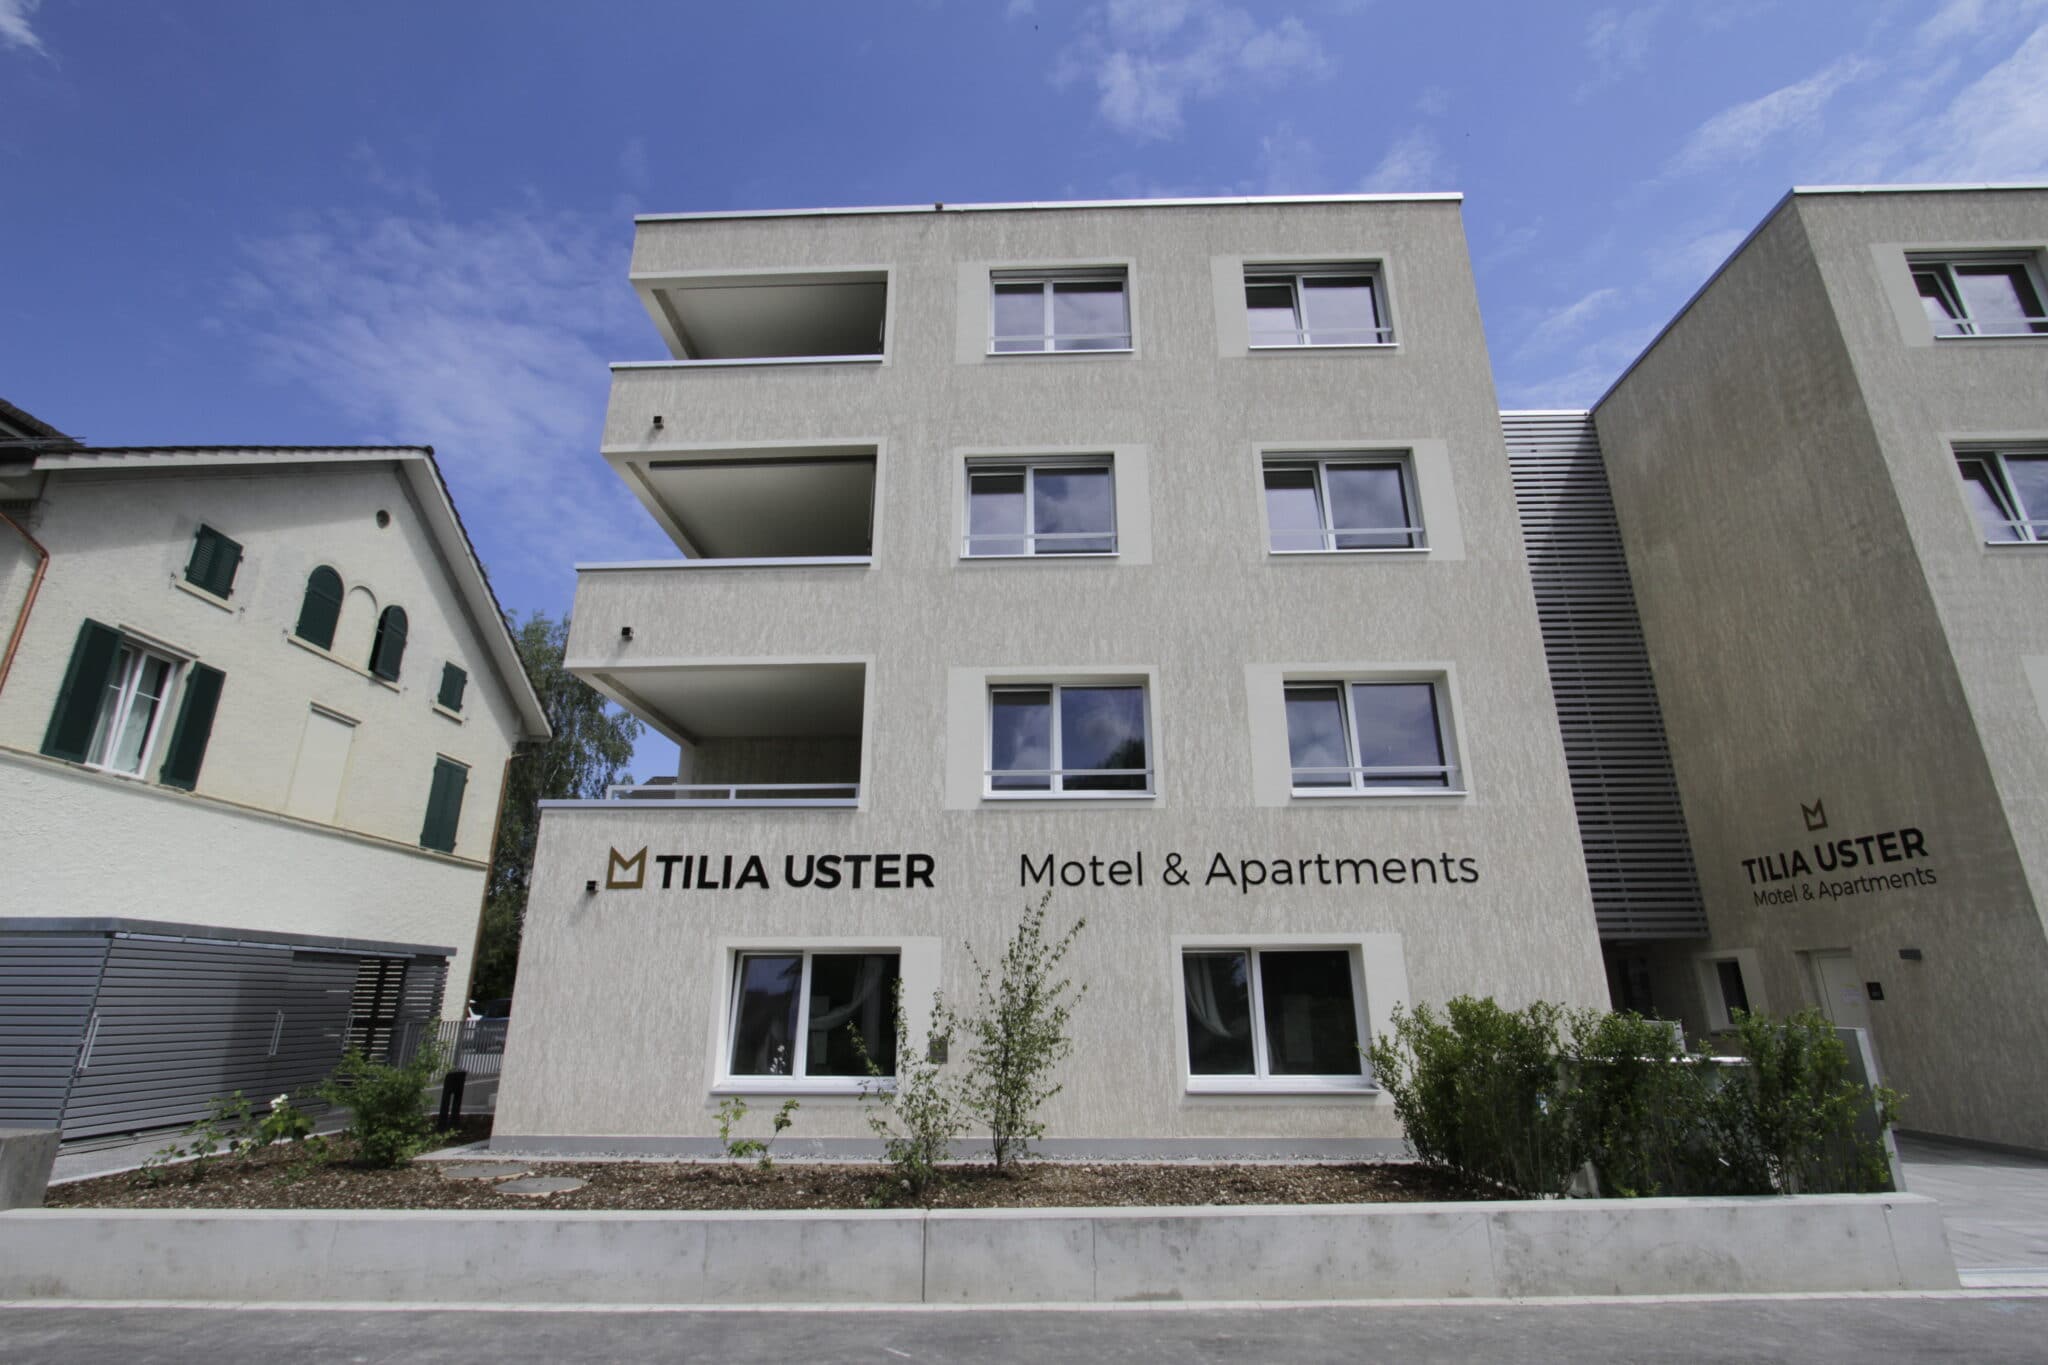 Tilia | MFH und Motel in Uster